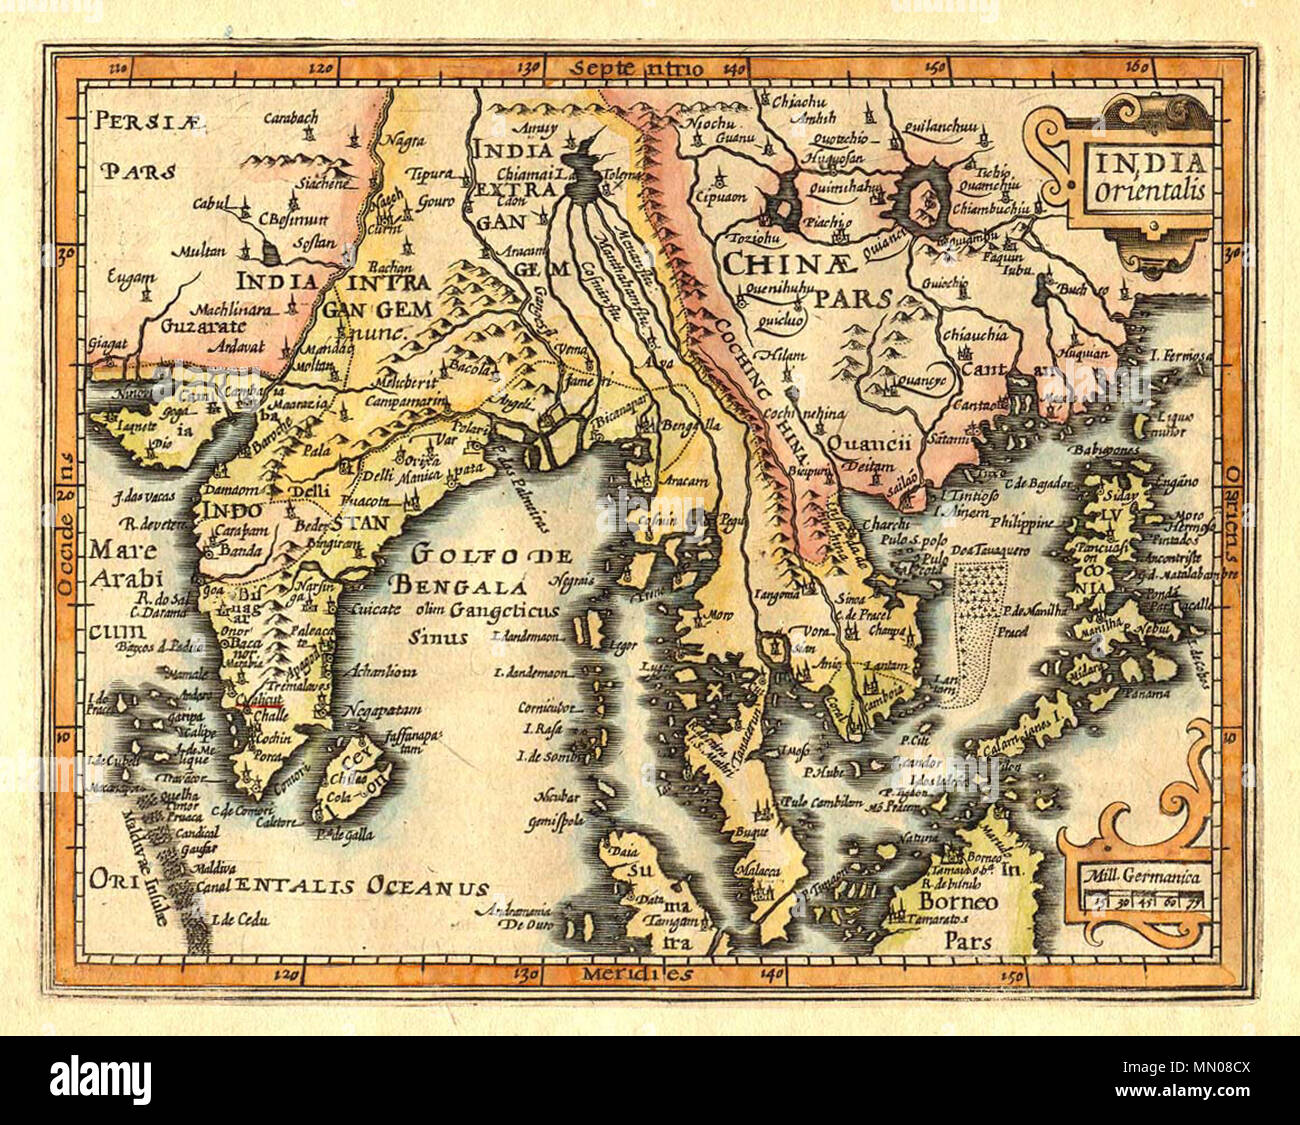 . Tiếng Việt: Bản đồ Đông Nam Á gồm cả Ấn Độ và Trung Quốc năm 1609, do Gerardus Mercator và Jan Hondius vẽ (được tô màu lại sau khi xuất bản). Trong bản đồ nước Đại Việt tức là xứ Giao Chỉ được gọi là Cochinchina để phân biệt với địa danh Cochin ở tây nam Ấn Độ, quần đảo Hoàng Sa gọi là Pracel và được ghi thuộc Champa tại vị trí trong đất liền giữa Cinoa (Thuận Hóa) và Champa là C. de Pracel.  . 1609. Gerardus Mercator (1512-1594), Jan Hondius IndoChine1609(India orientalis) Stock Photo